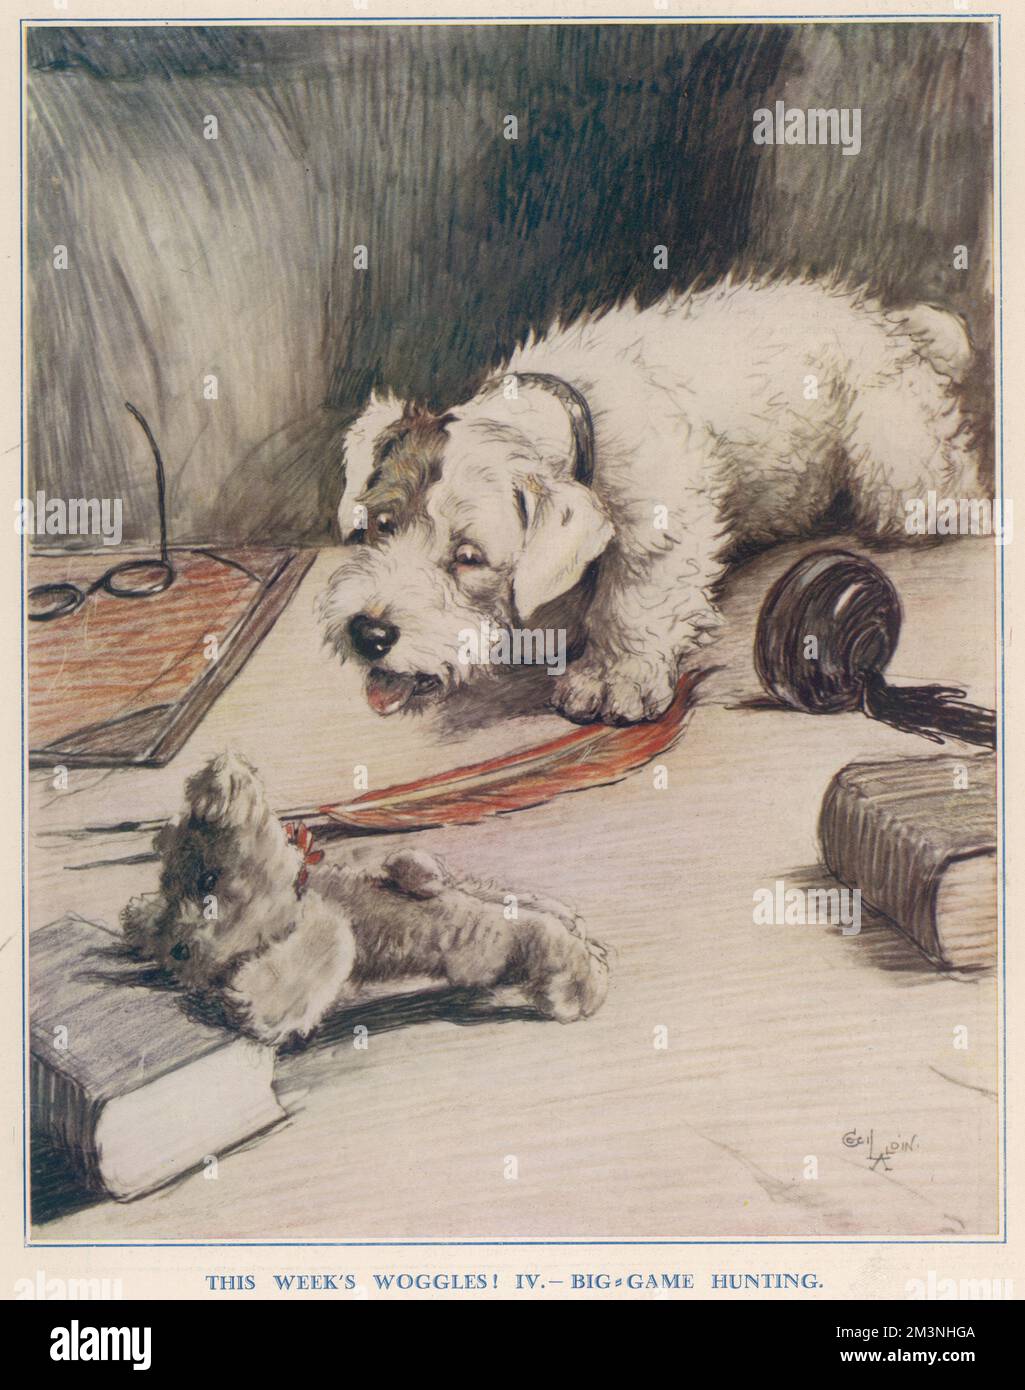 Woggles, der Sealyham Terrier, der dem Tierkünstler Cecil Aldin gehört, stellte sich hier ein unschuldiges, weiches Spielzeug vor. Datum: 1931 Stockfoto